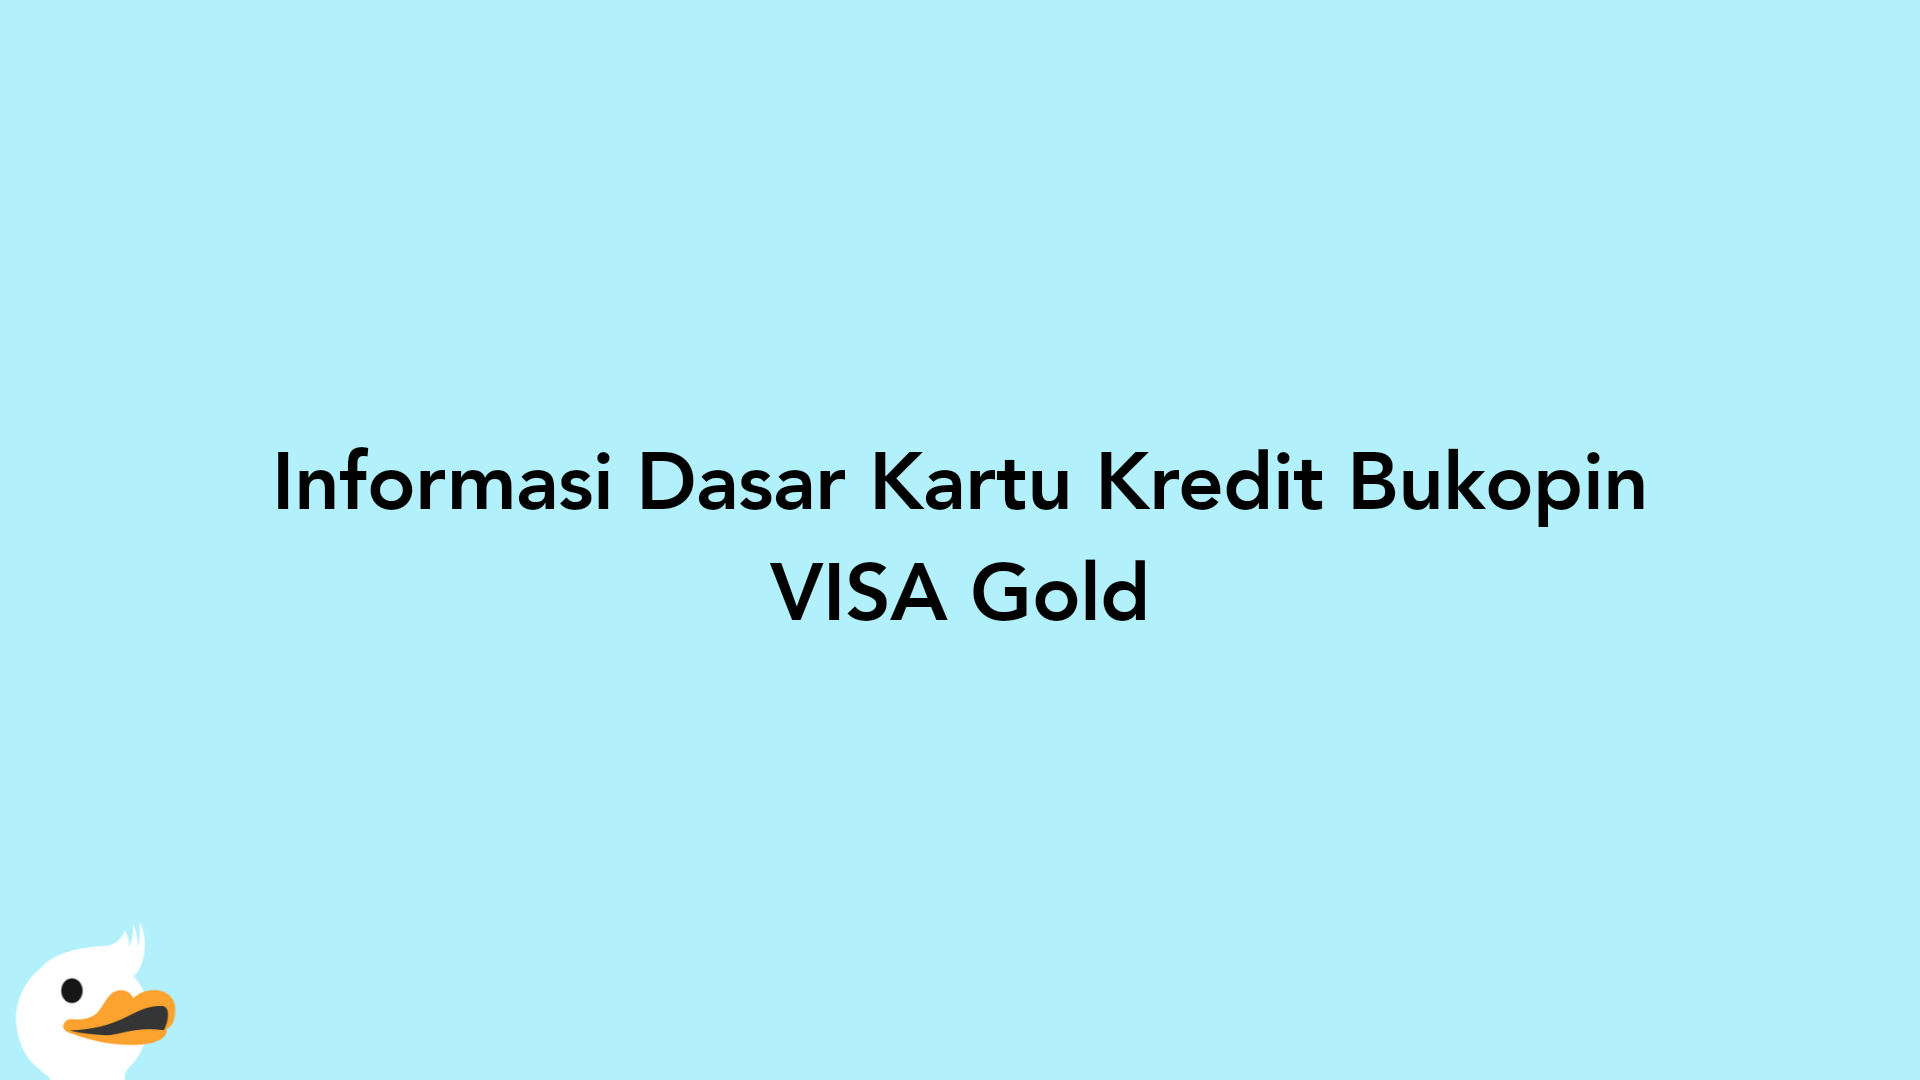 Informasi Dasar Kartu Kredit Bukopin VISA Gold